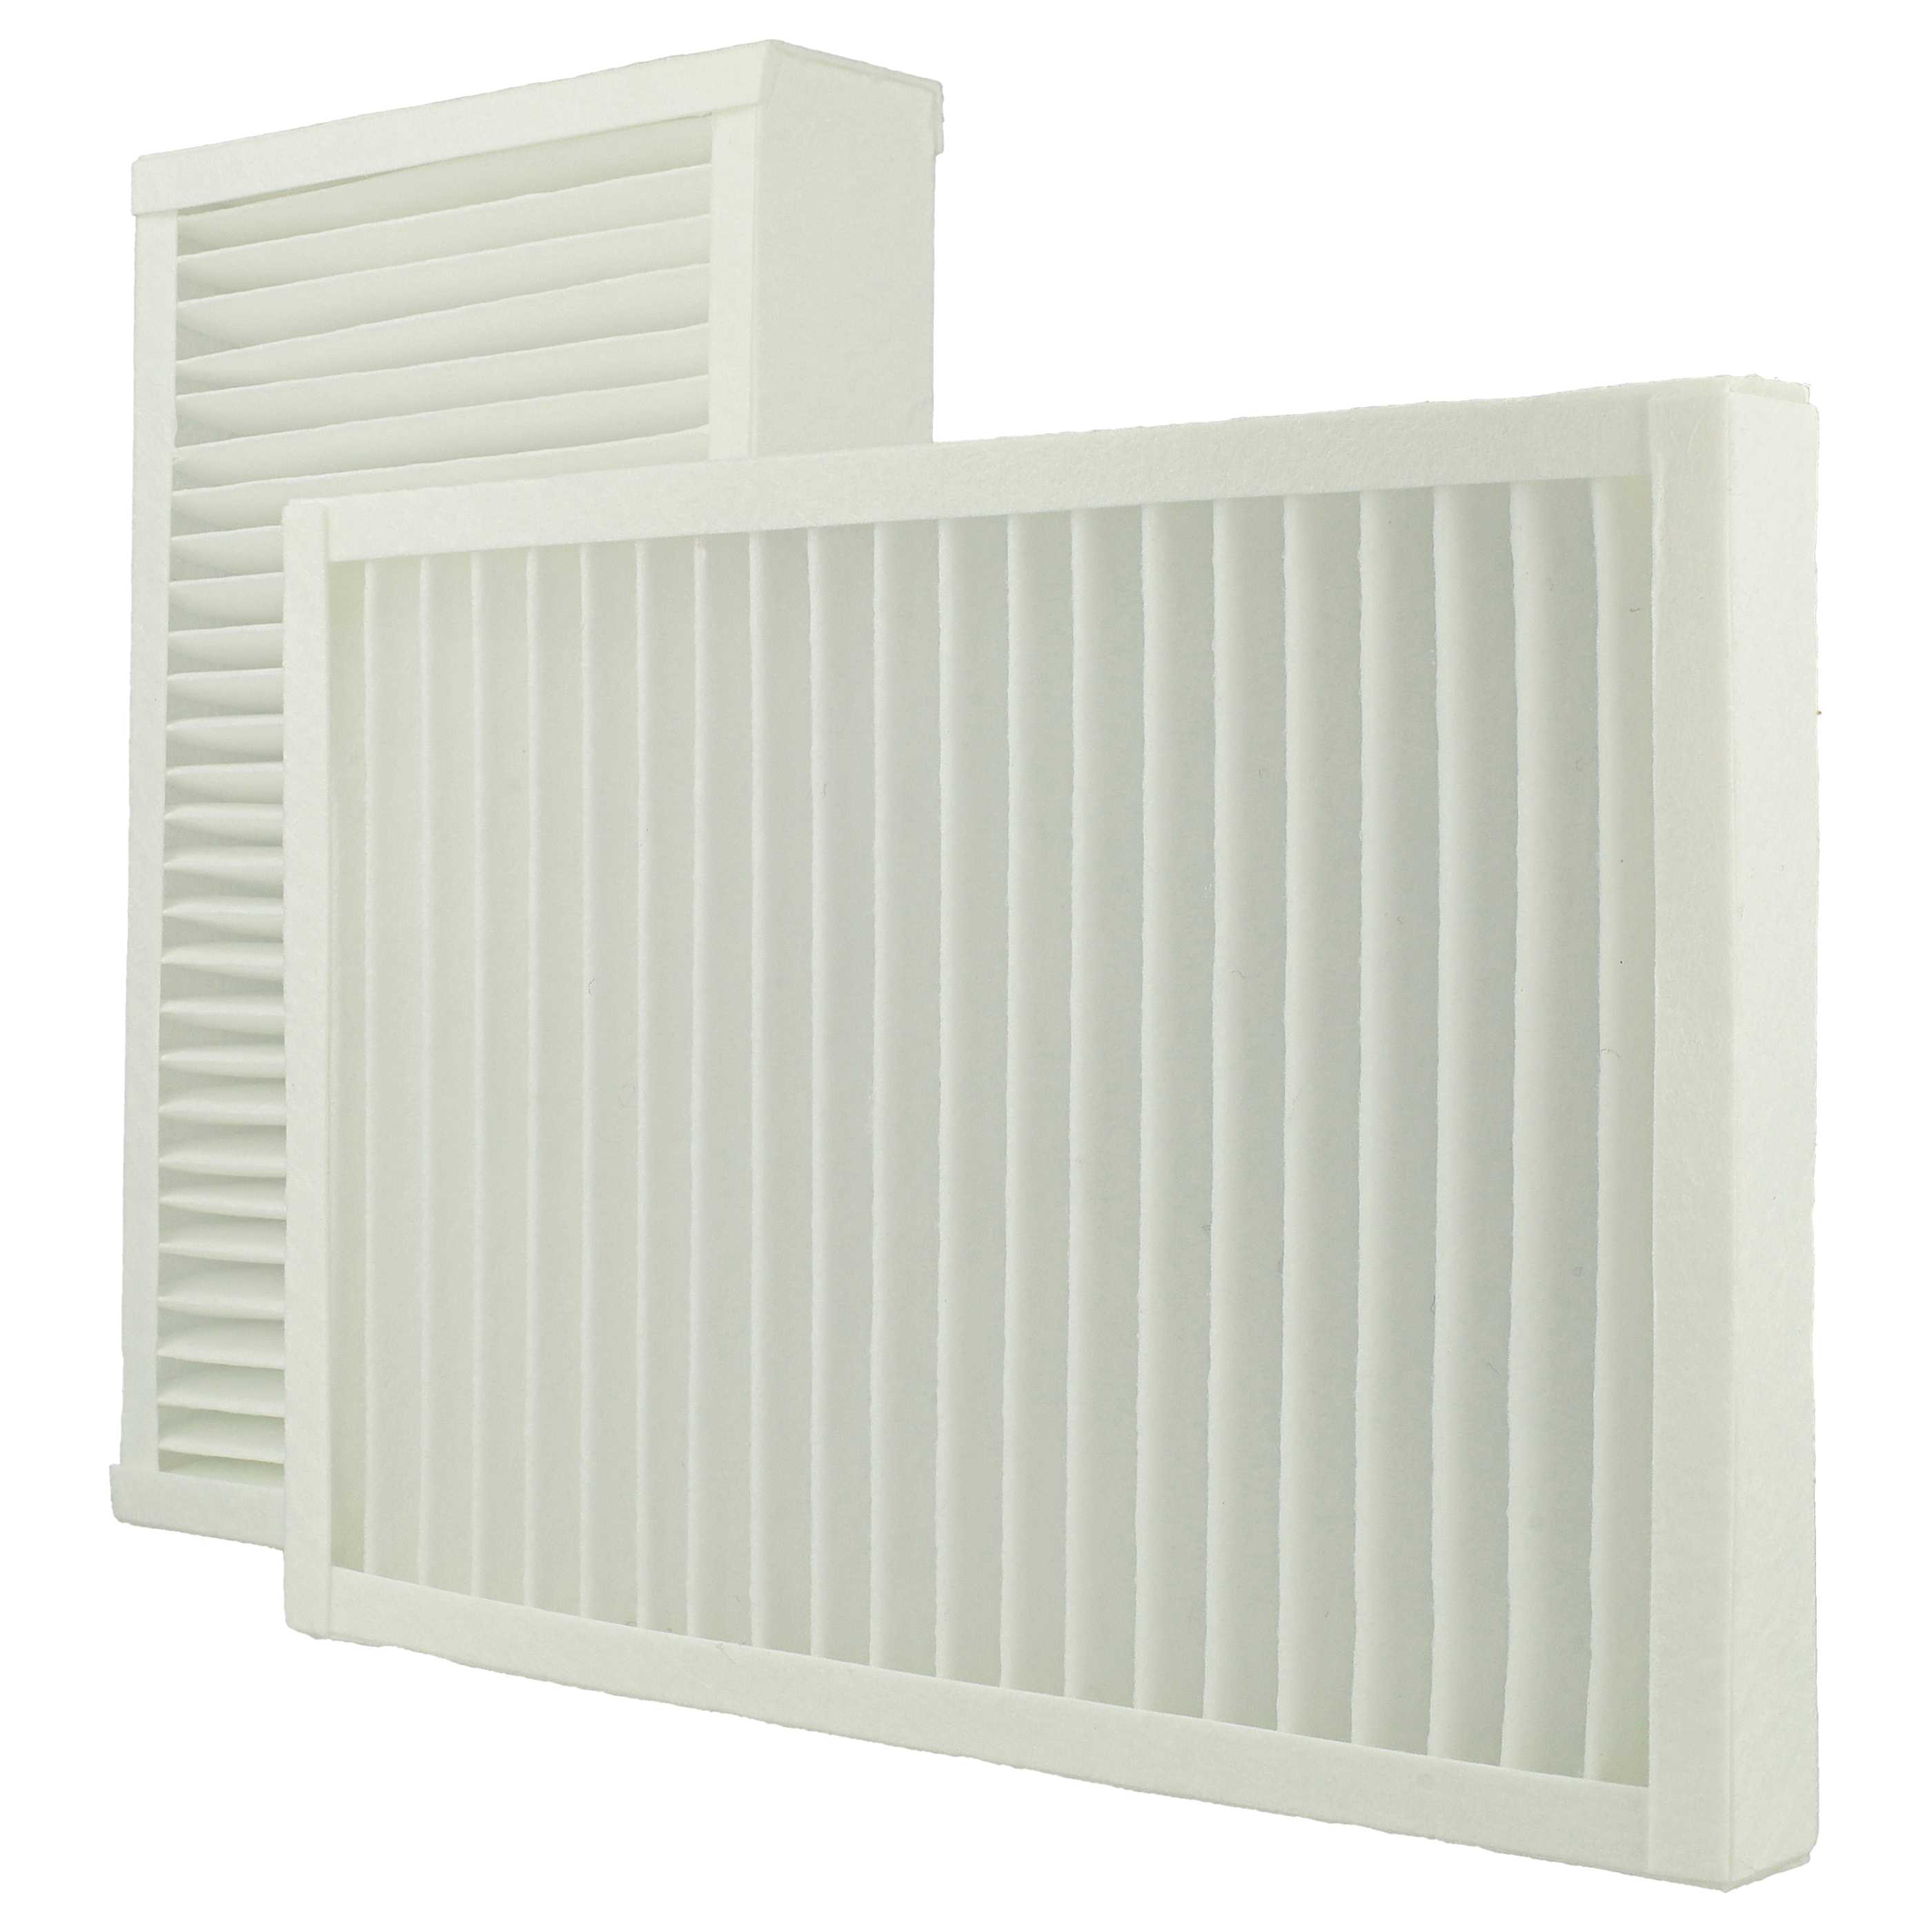 2 Part Filter Set replaces Viessmann 7543981 for ventilation system - Abluftfilter (G4), Zuluftfilter (F7)